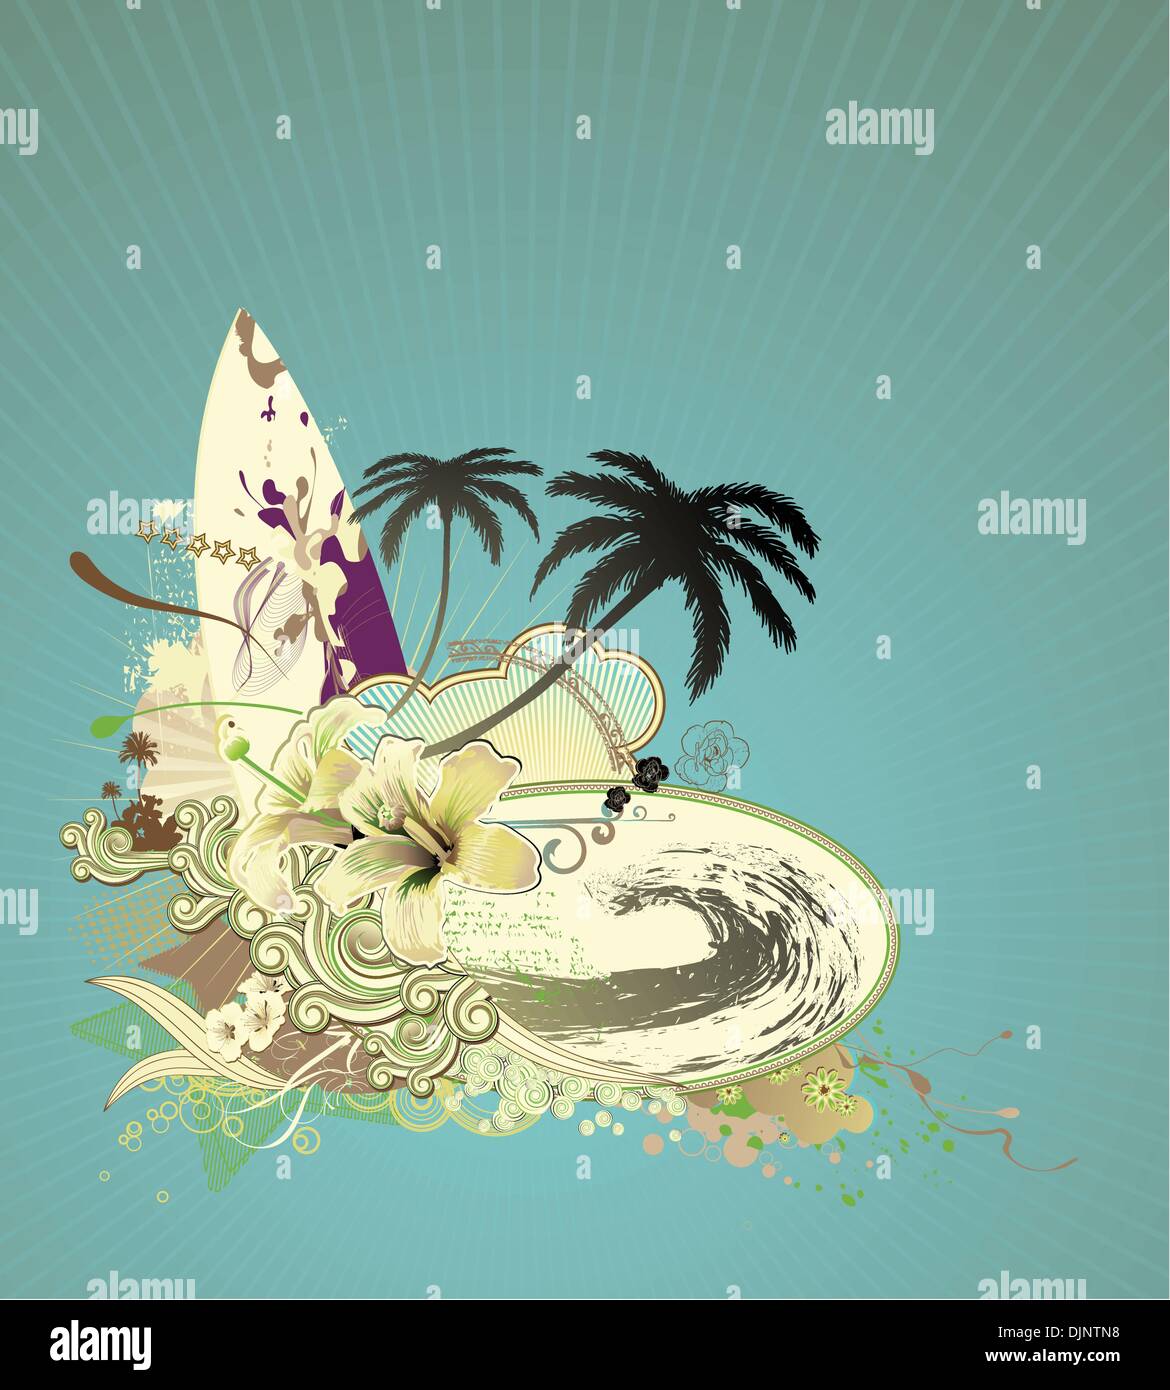 Illustrazione Vettoriale di grunge composizione con tavola da surf su raggi di sole, big wave, hibiscus, palme silhouette e riccio ri Illustrazione Vettoriale